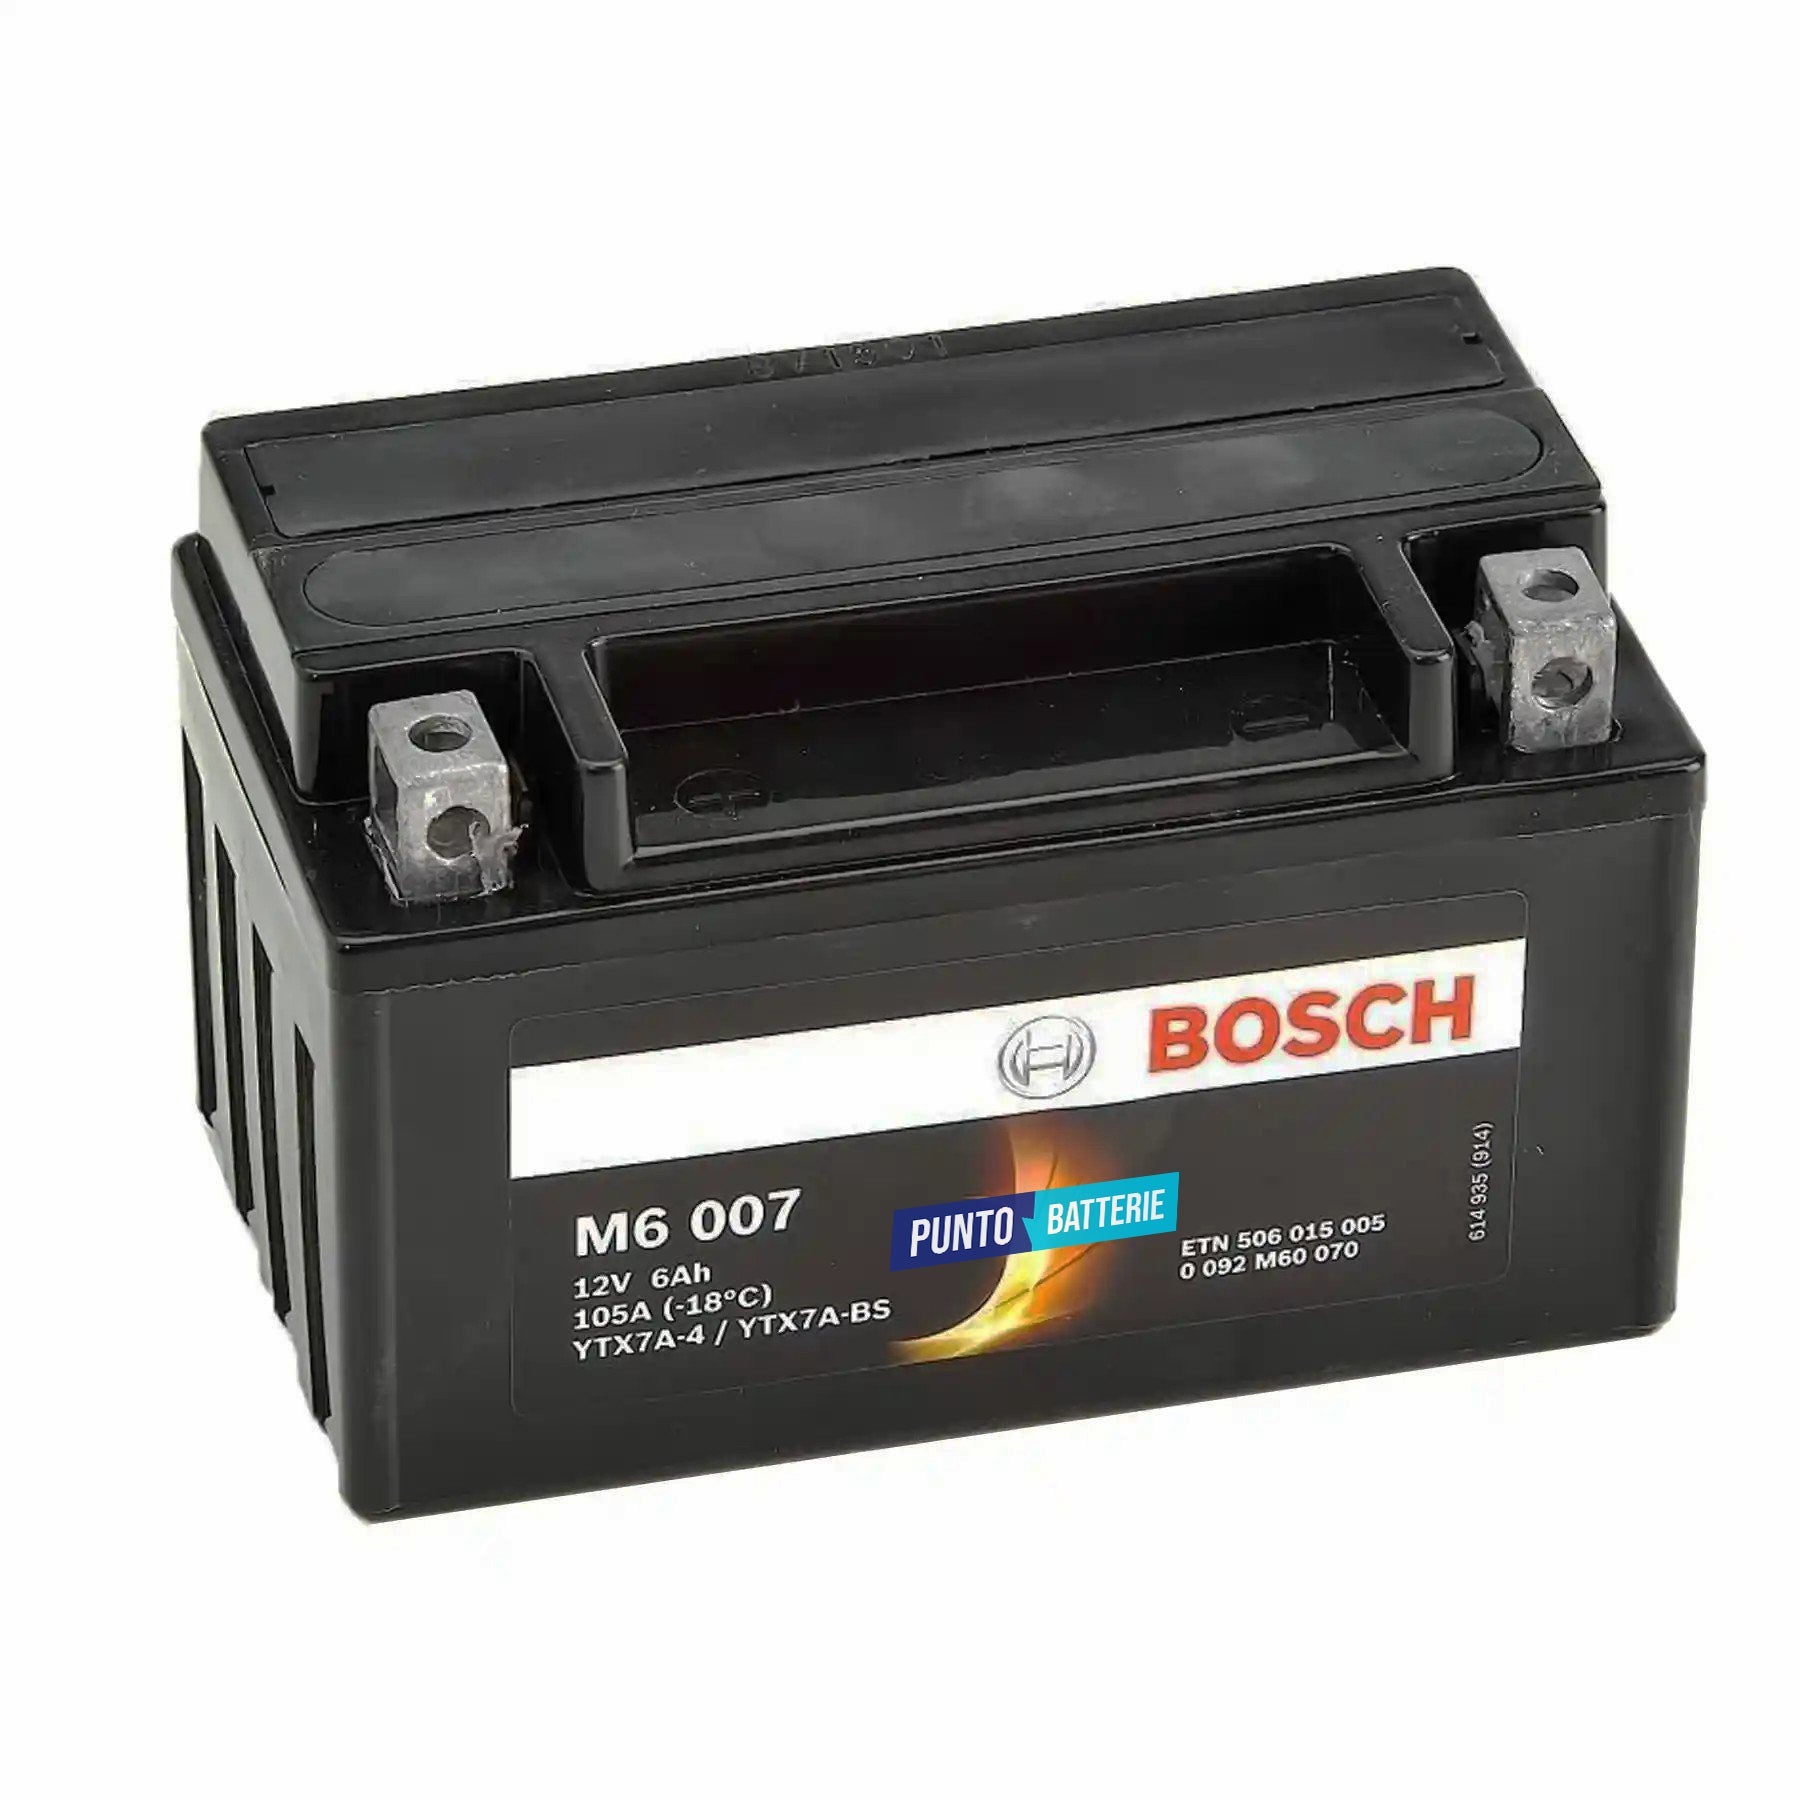 Batteria originale Bosch M6 M6007, dimensioni 150 x 87 x 93, polo positivo a sinistra, 12 volt, 6 amperora, 105 ampere. Batteria per moto, scooter e powersport.